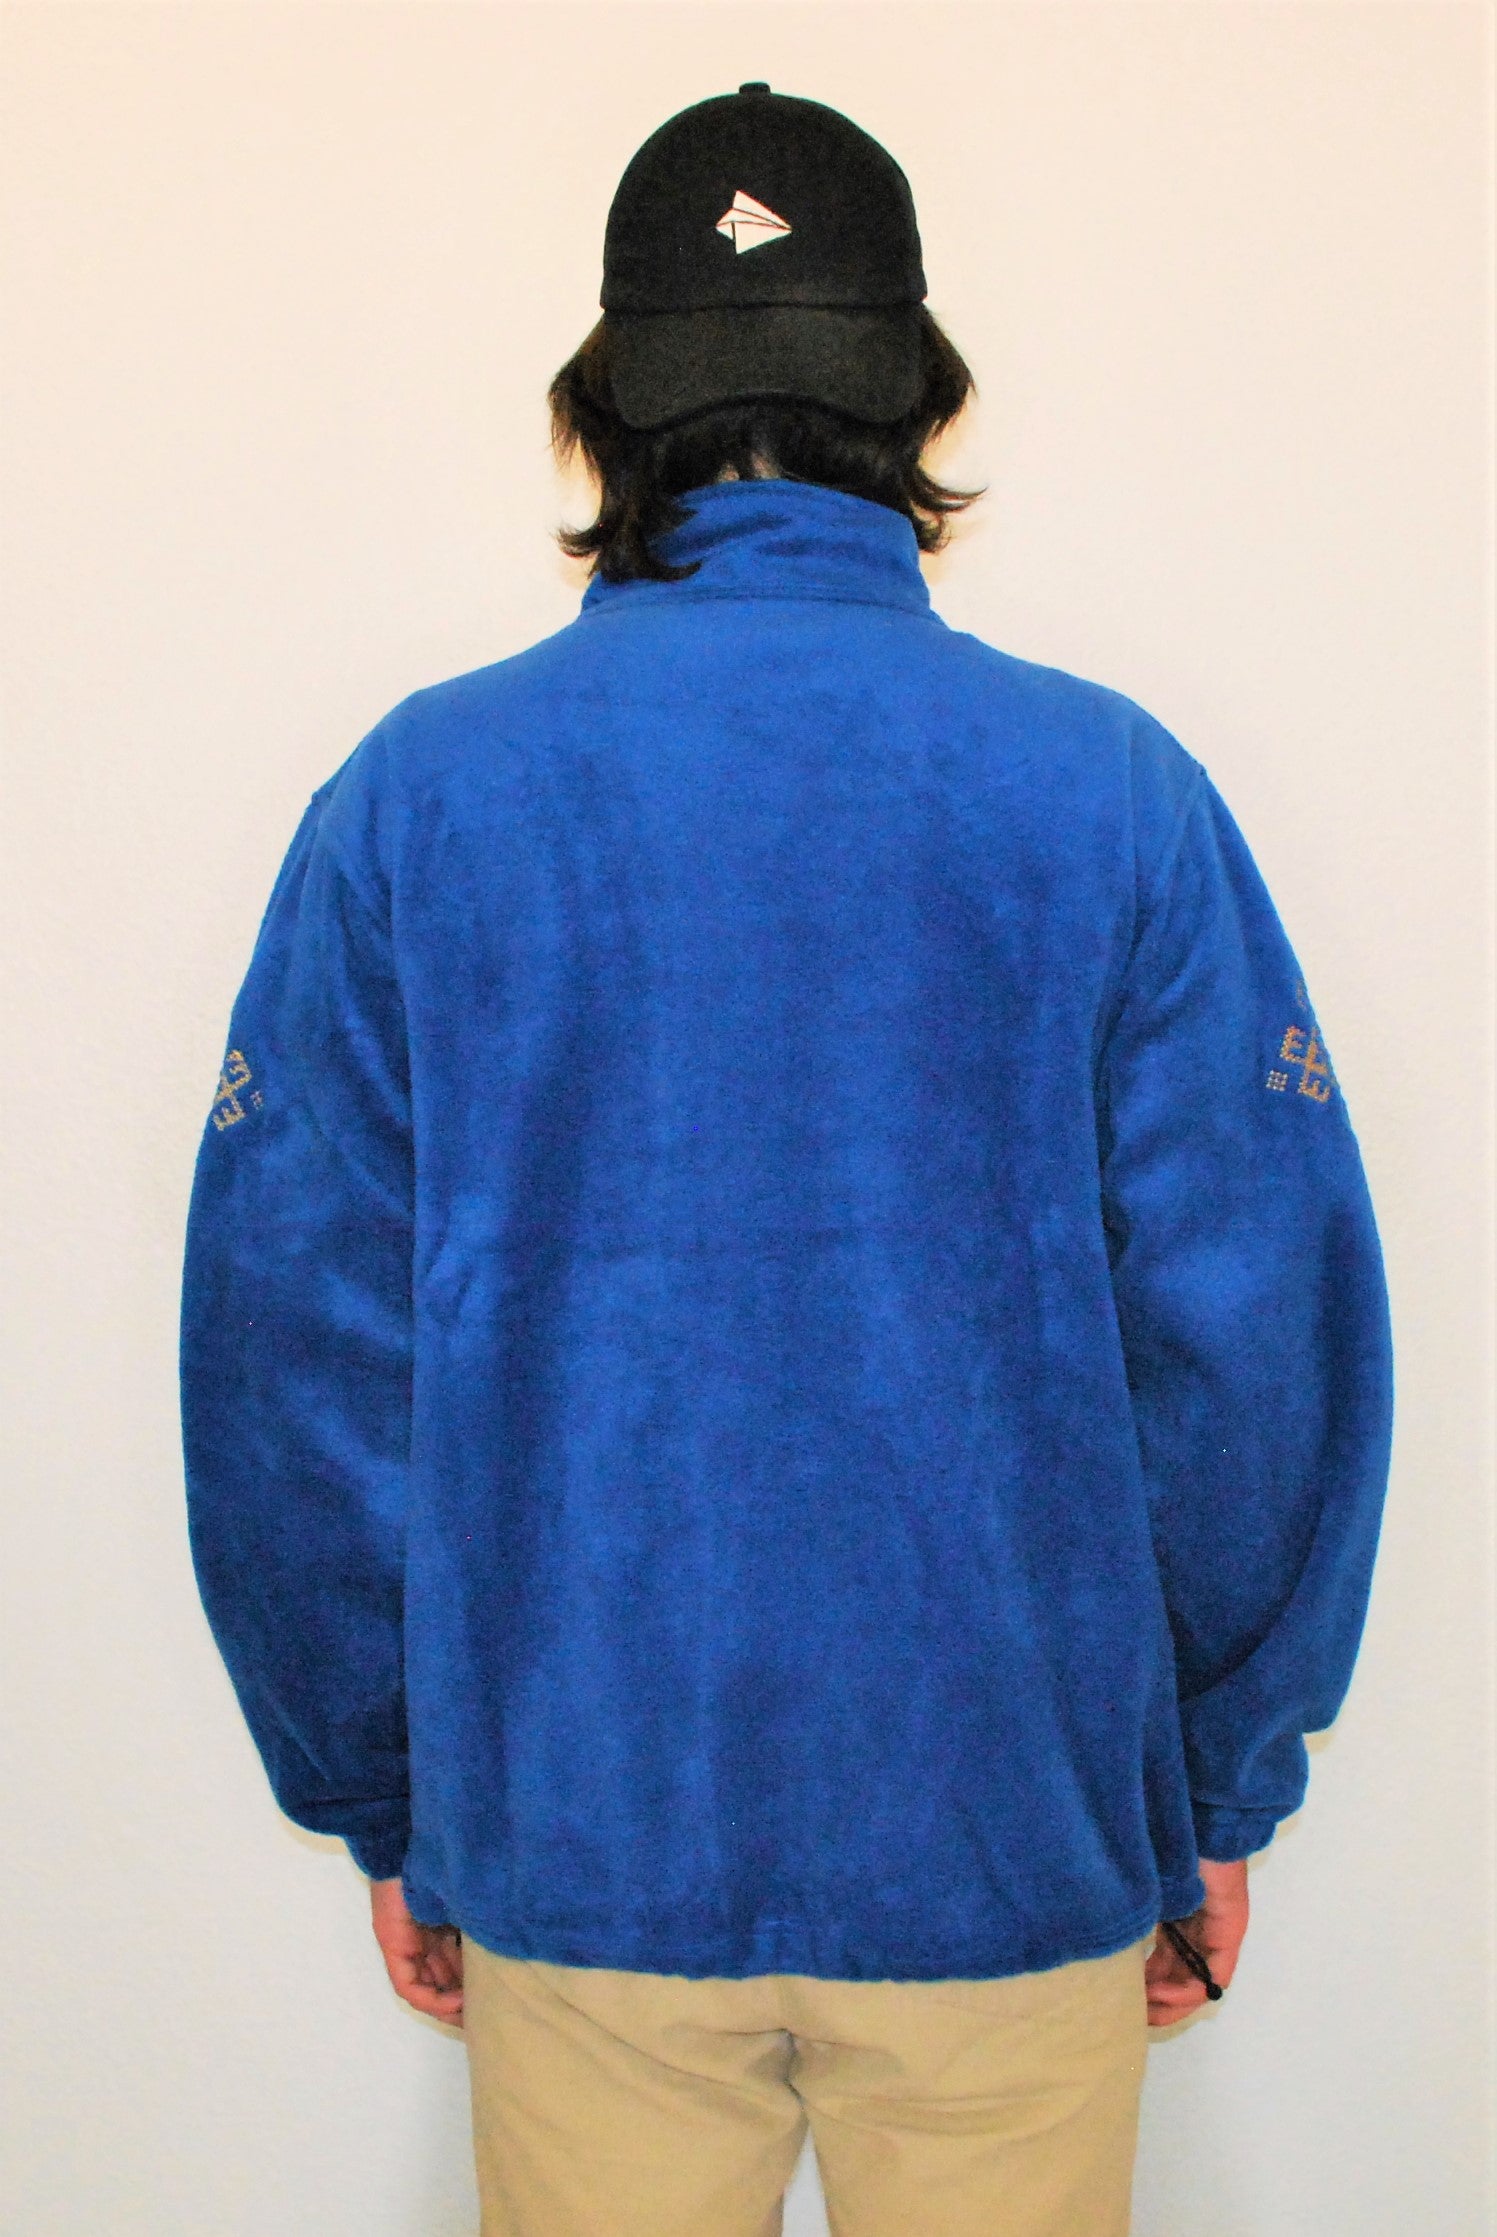 Men's Embroidered full-zip fleece jacket.